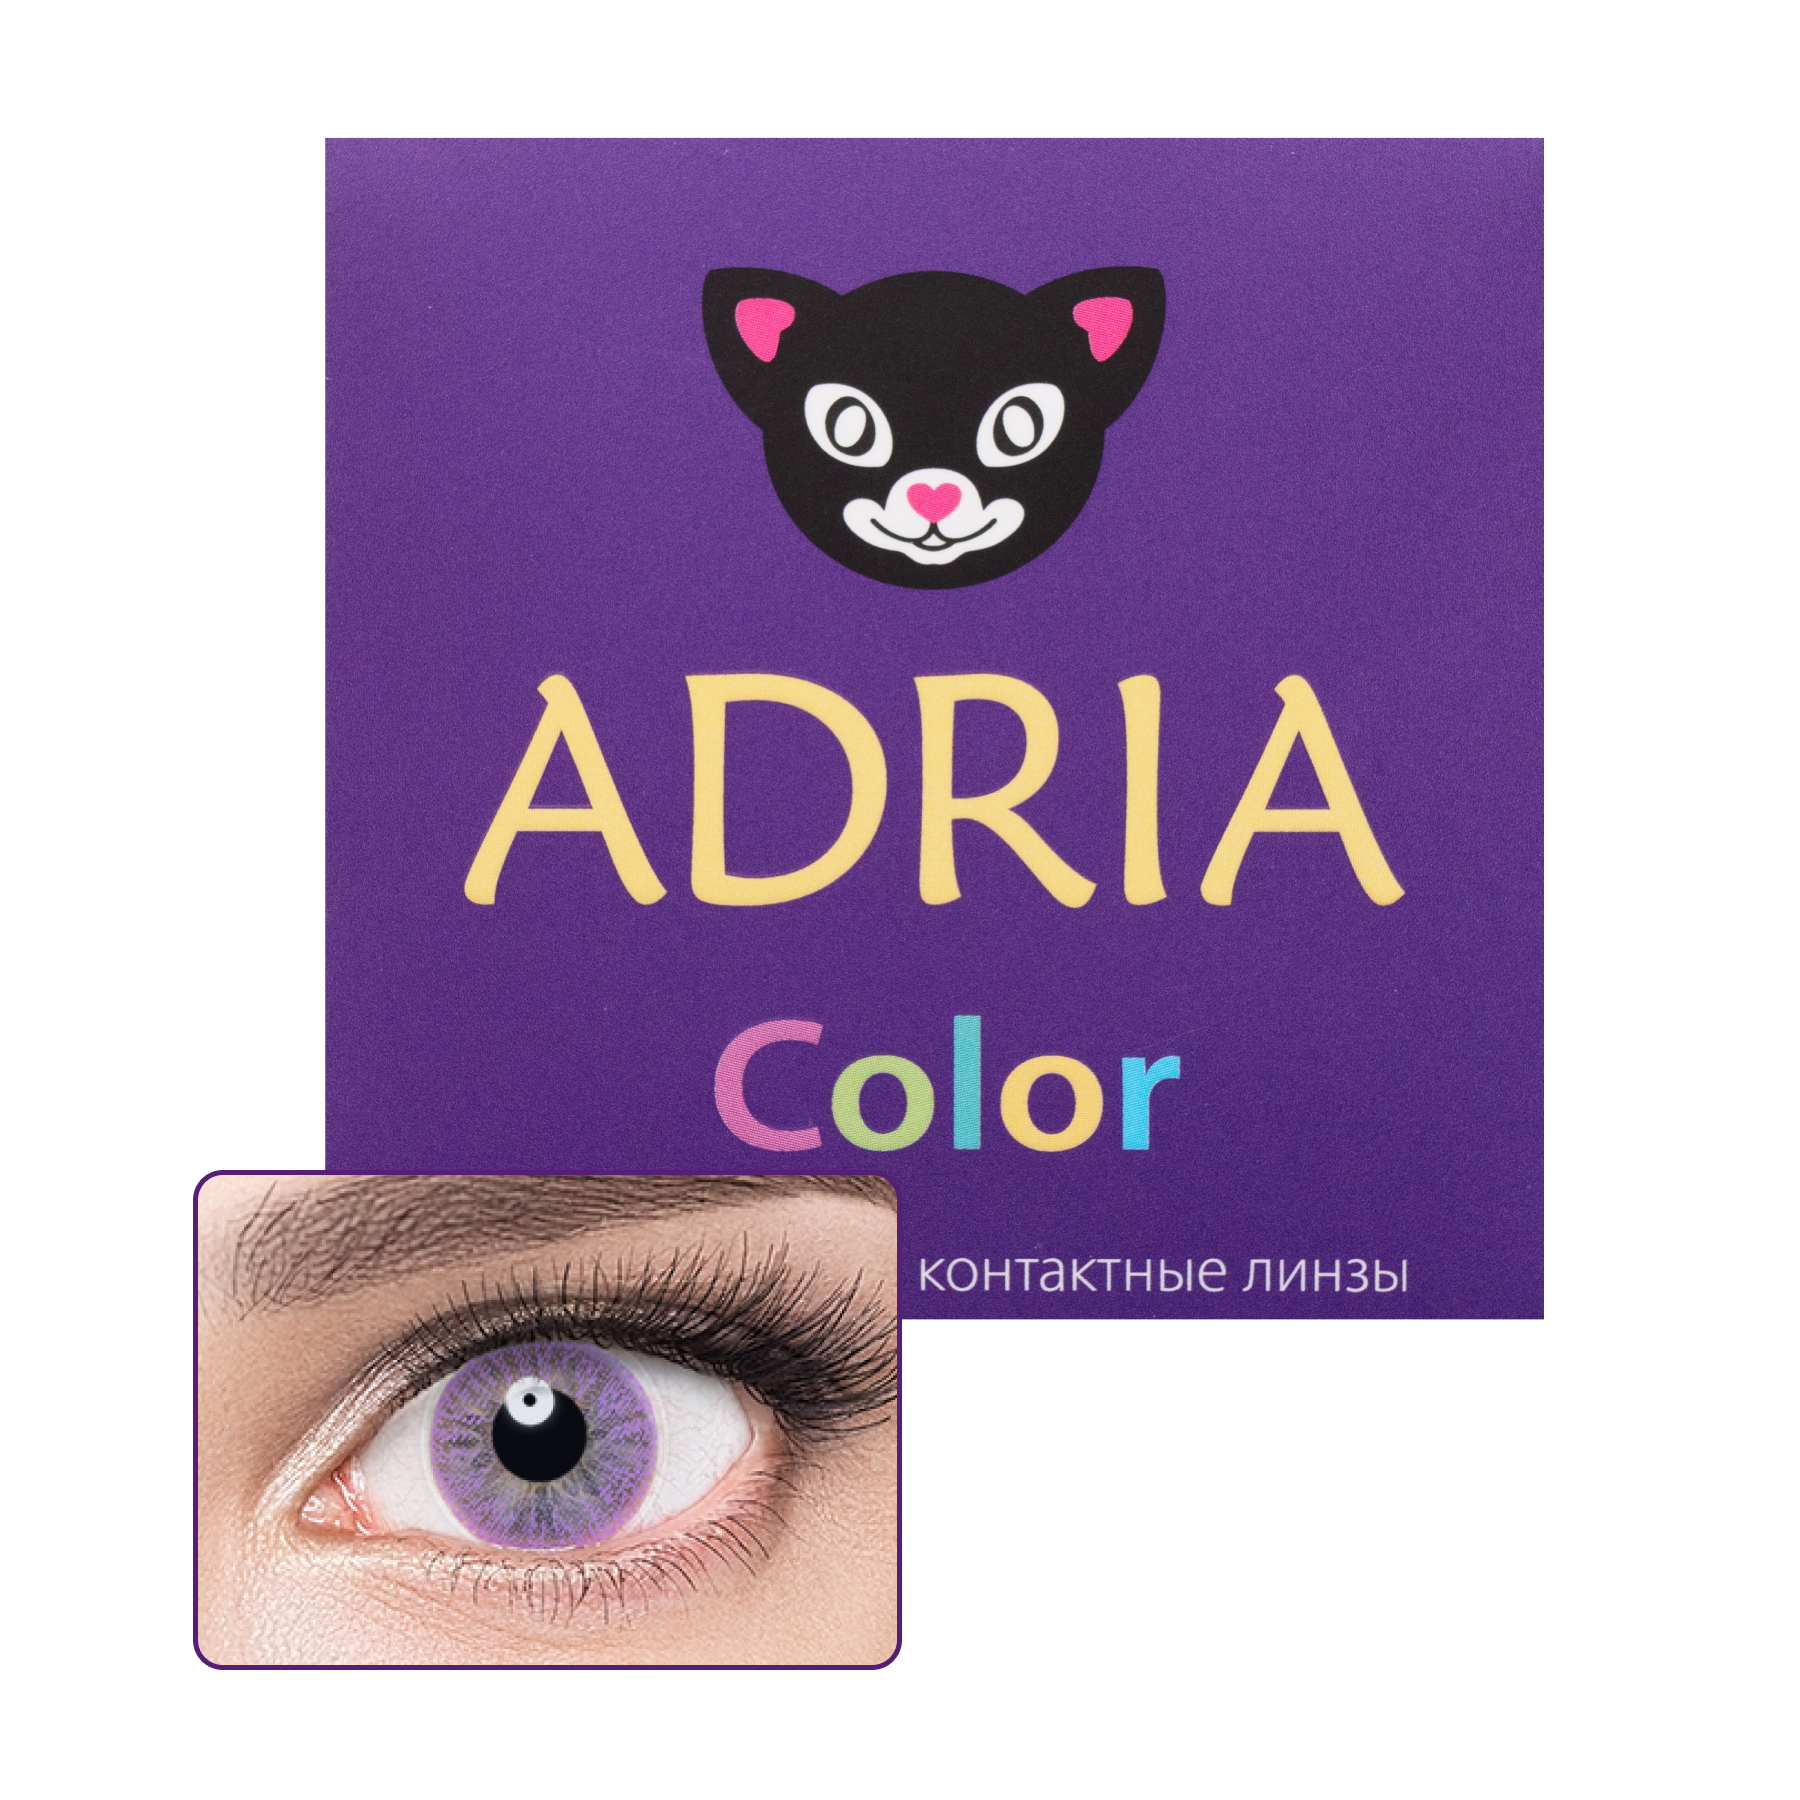 Купить COLOR 1 TONE 2 линзы, Цветные контактные линзы Adria 1T 2 pack PWR -9, 00, R 8.6, Lavender